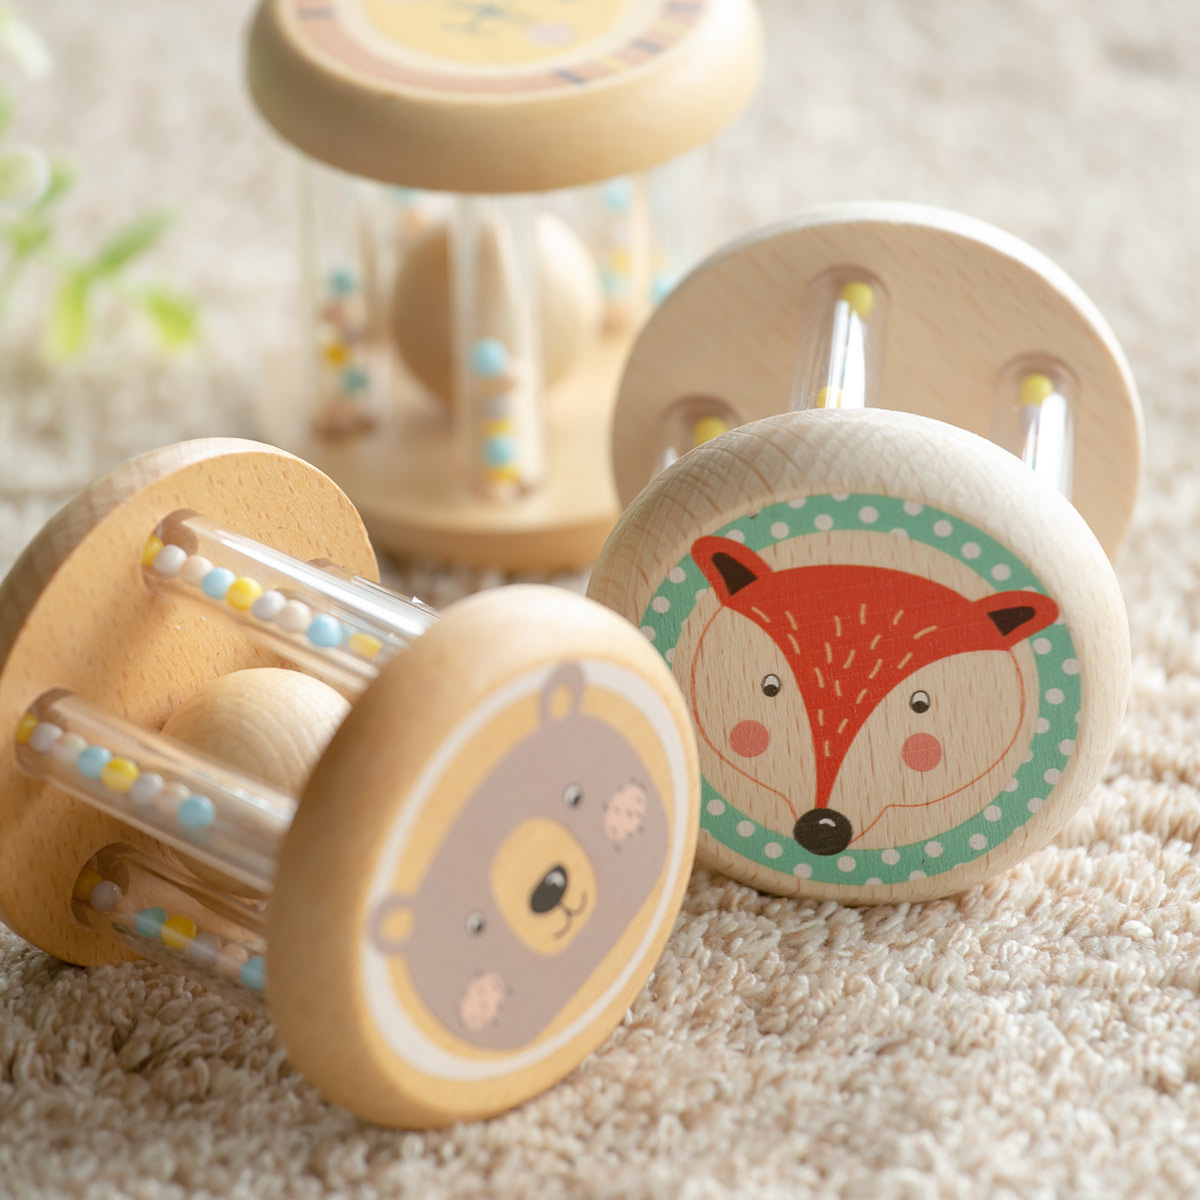 おもちゃ ベビー RATTLE ANIMAL BEAR 木製 北欧 出産祝い （ 木製おもちゃ 木製玩具 木のおもちゃ 玩具 オモチャ 知育玩具 赤ちゃん ラト